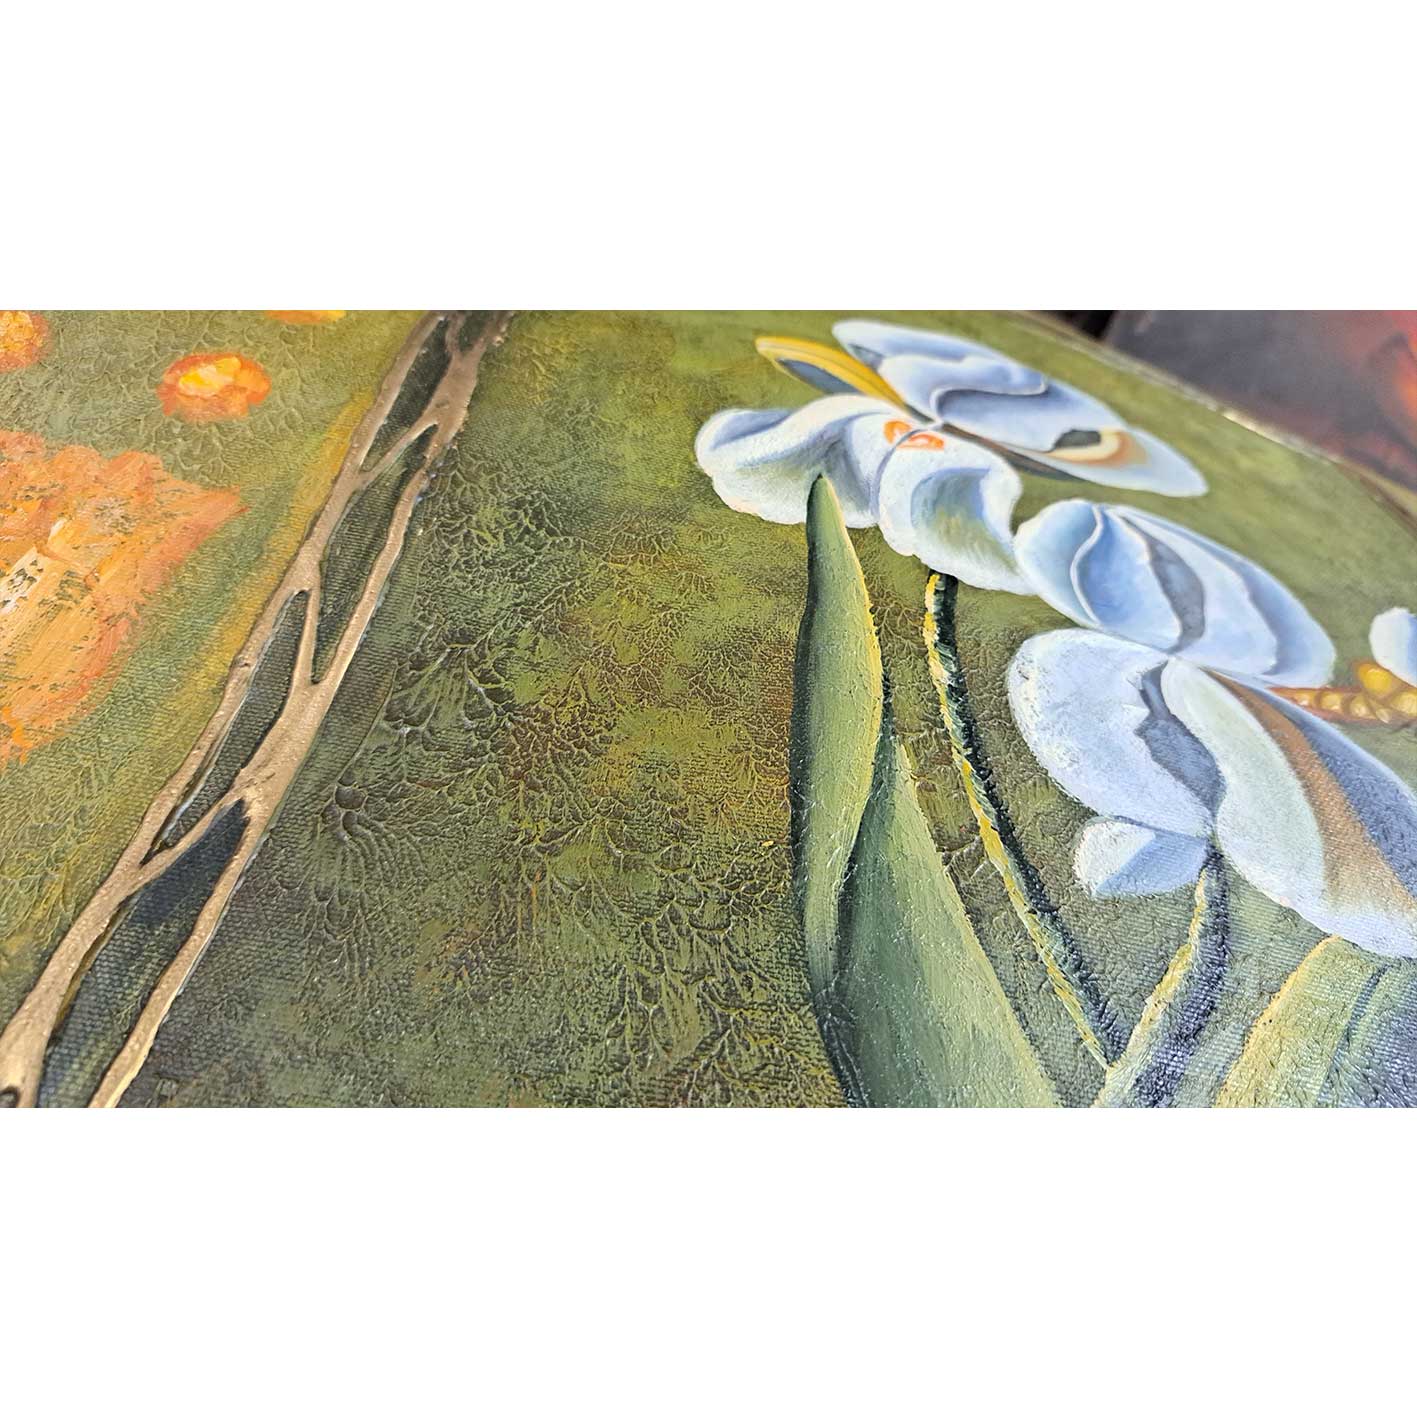 Zwei Blumen Diptychon Gemälde 50x60 cm [2 Stück]